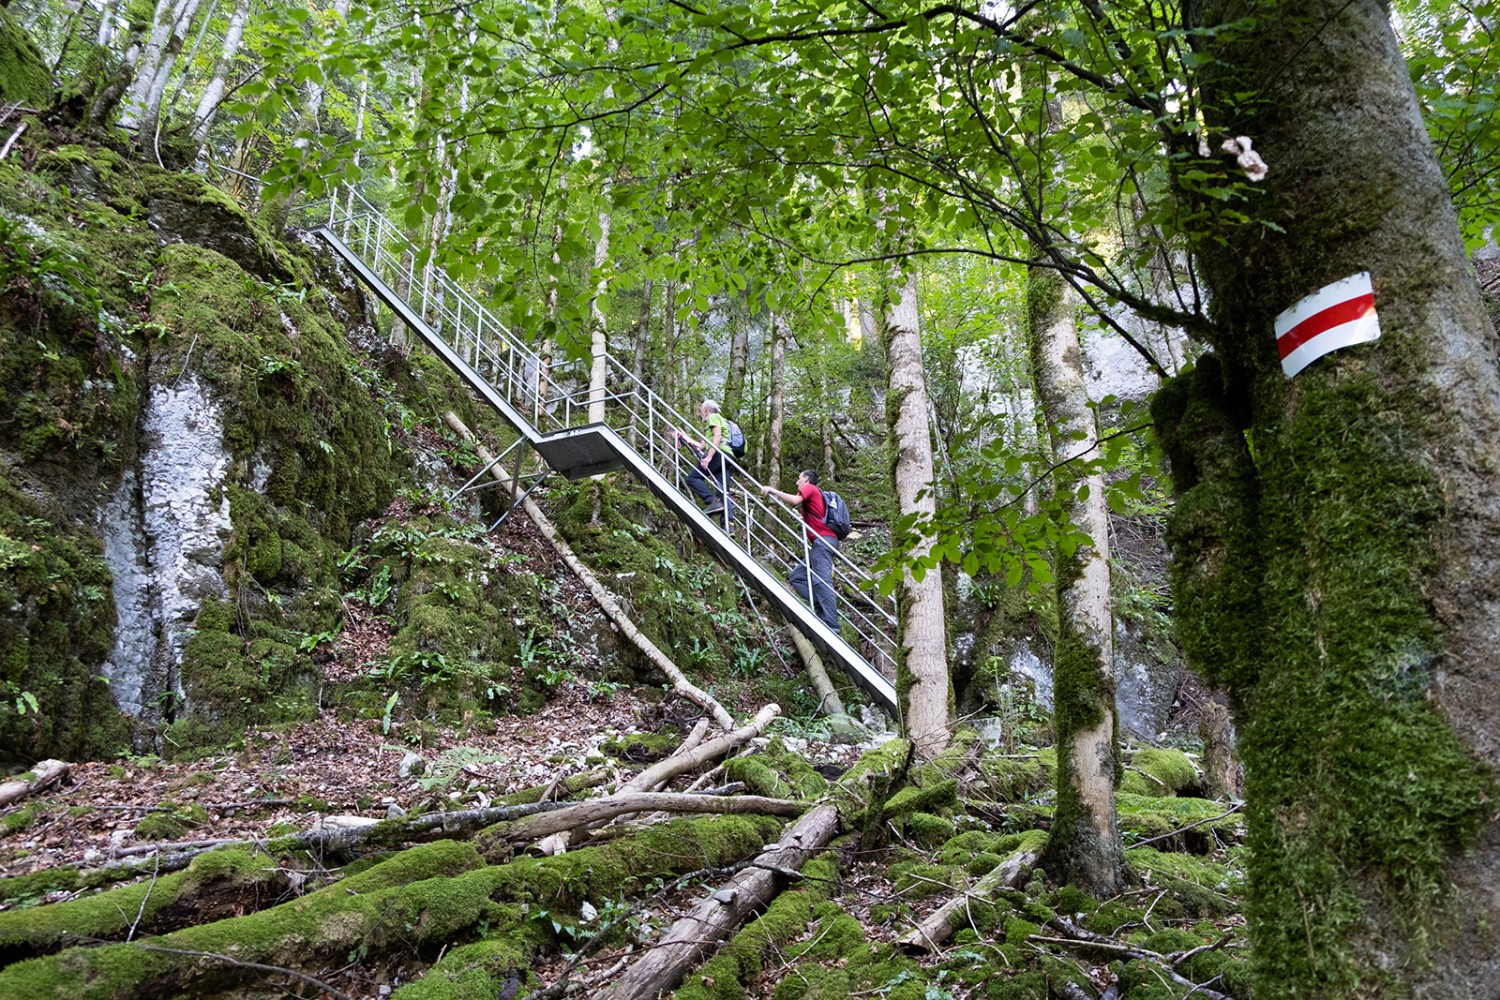 Leitern und Treppen vereinfachen den Aufstieg nach Le Noirmont.
Bilder: Markus Ruff